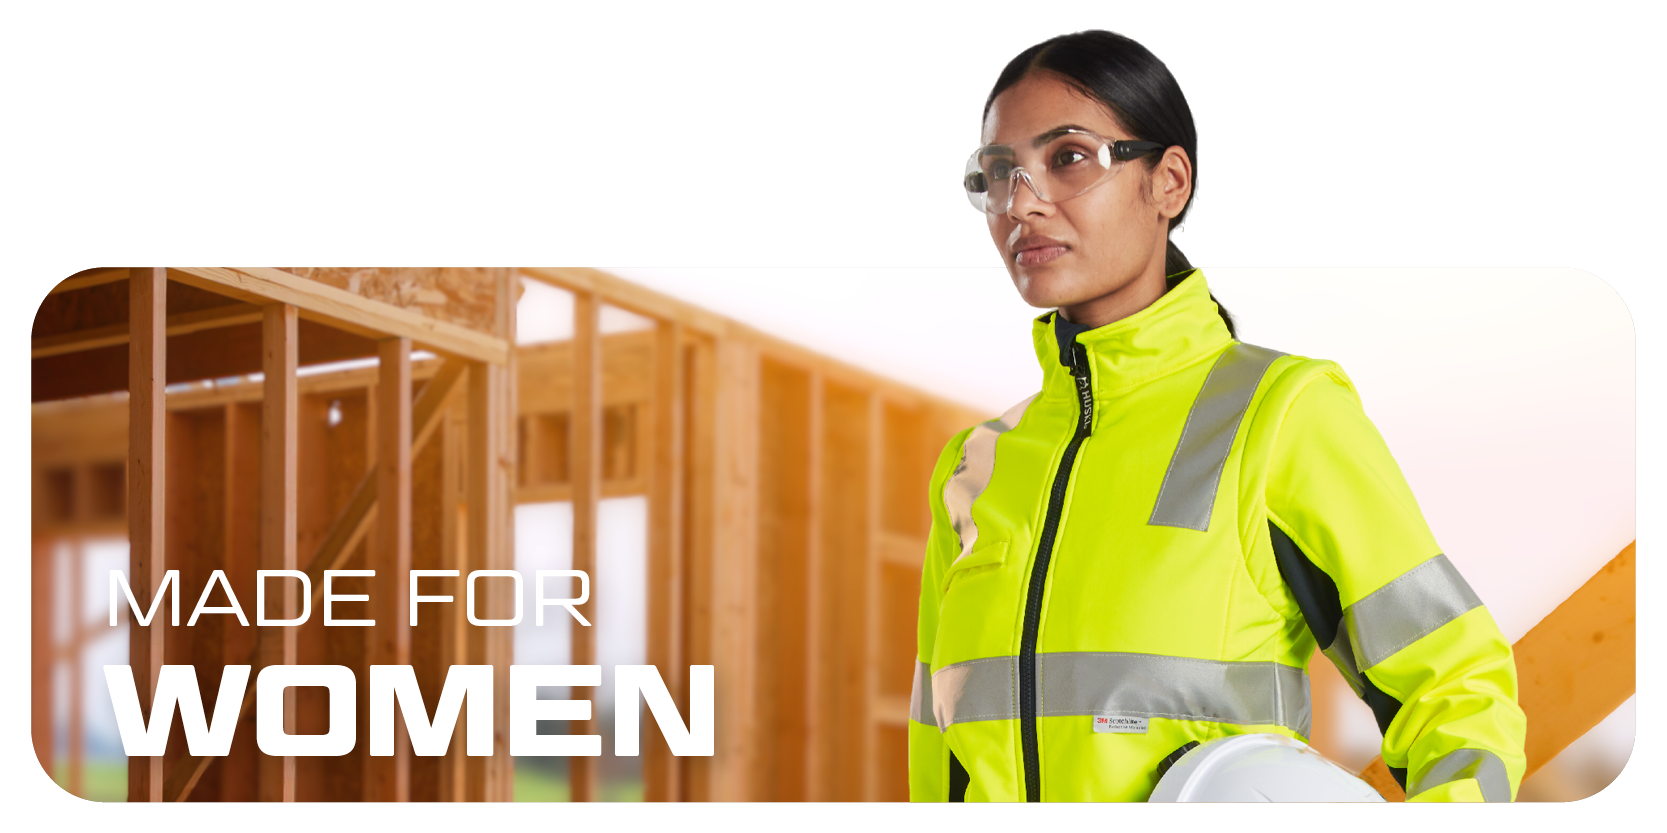 Dame mit Brille, Helm und Warnkleidung, im Hintergrund Holzwände in Ständerbauweise.